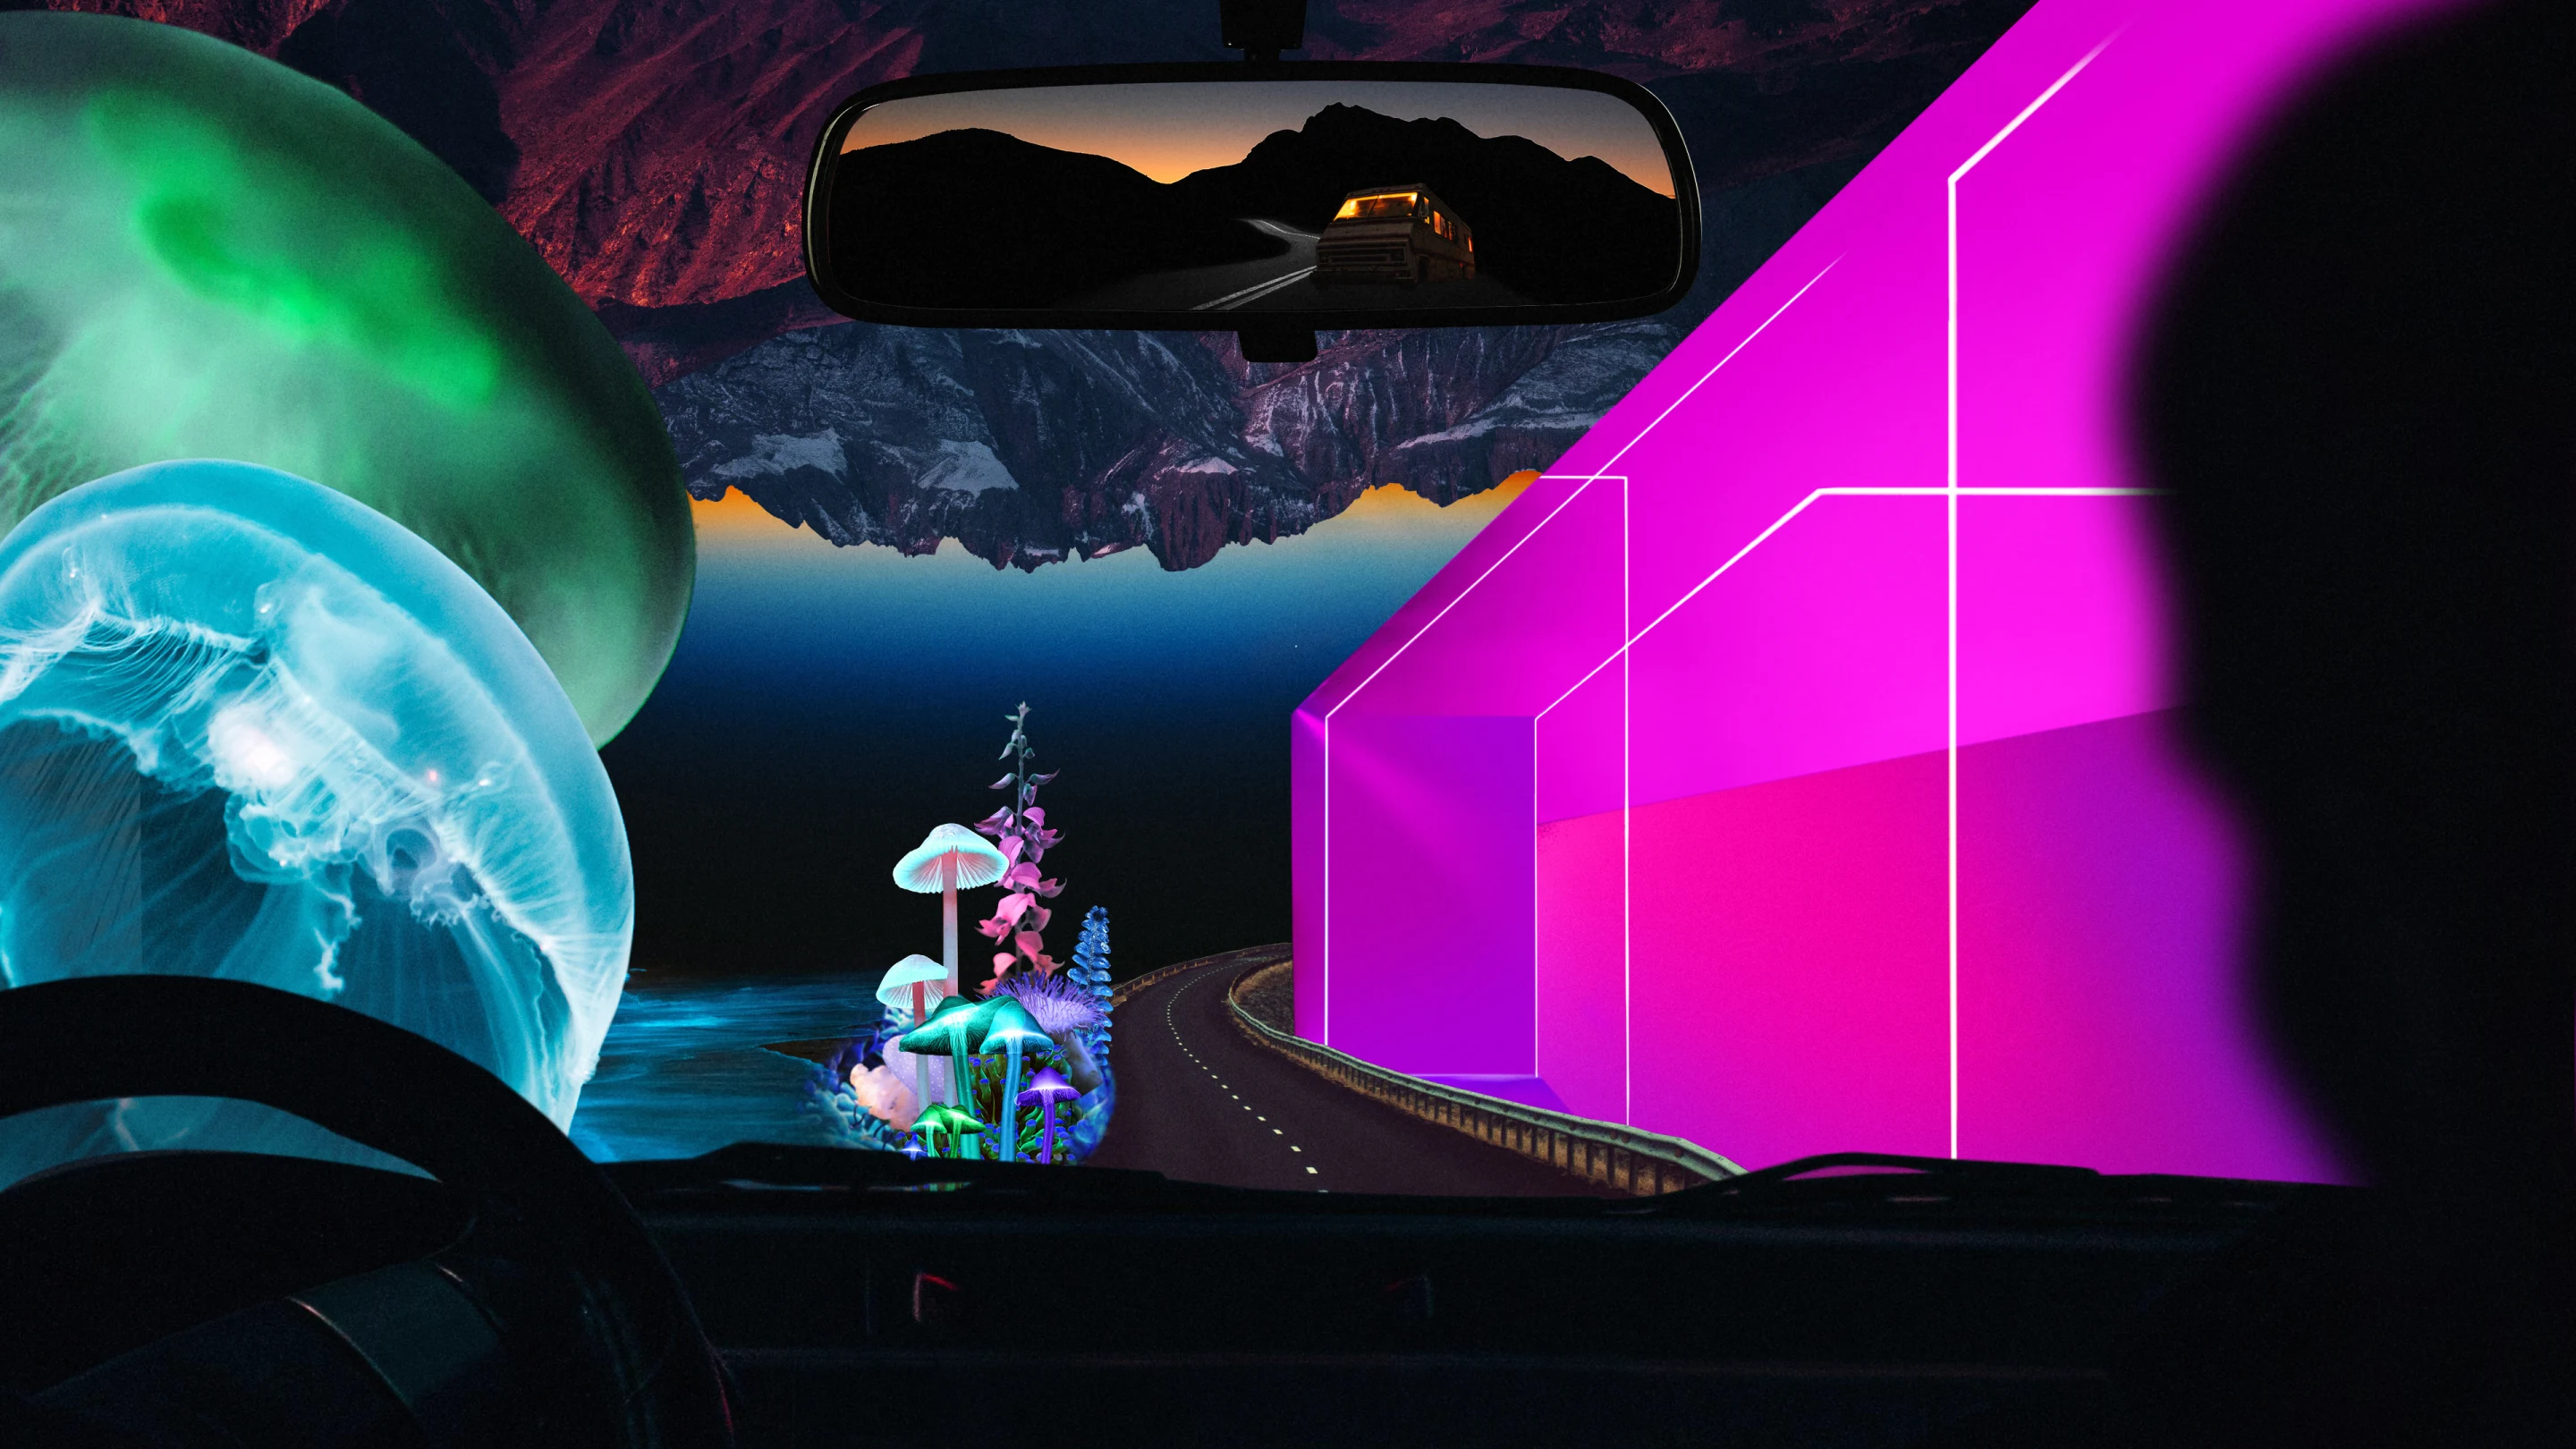 Colagem em tons vibrantes vista através do para-brisa de um carro. Grande água-viva à esquerda, forma geométrica rosa neon à direita, com formações montanhosas escuras e desenho de grandes cogumelos em perspectiva.